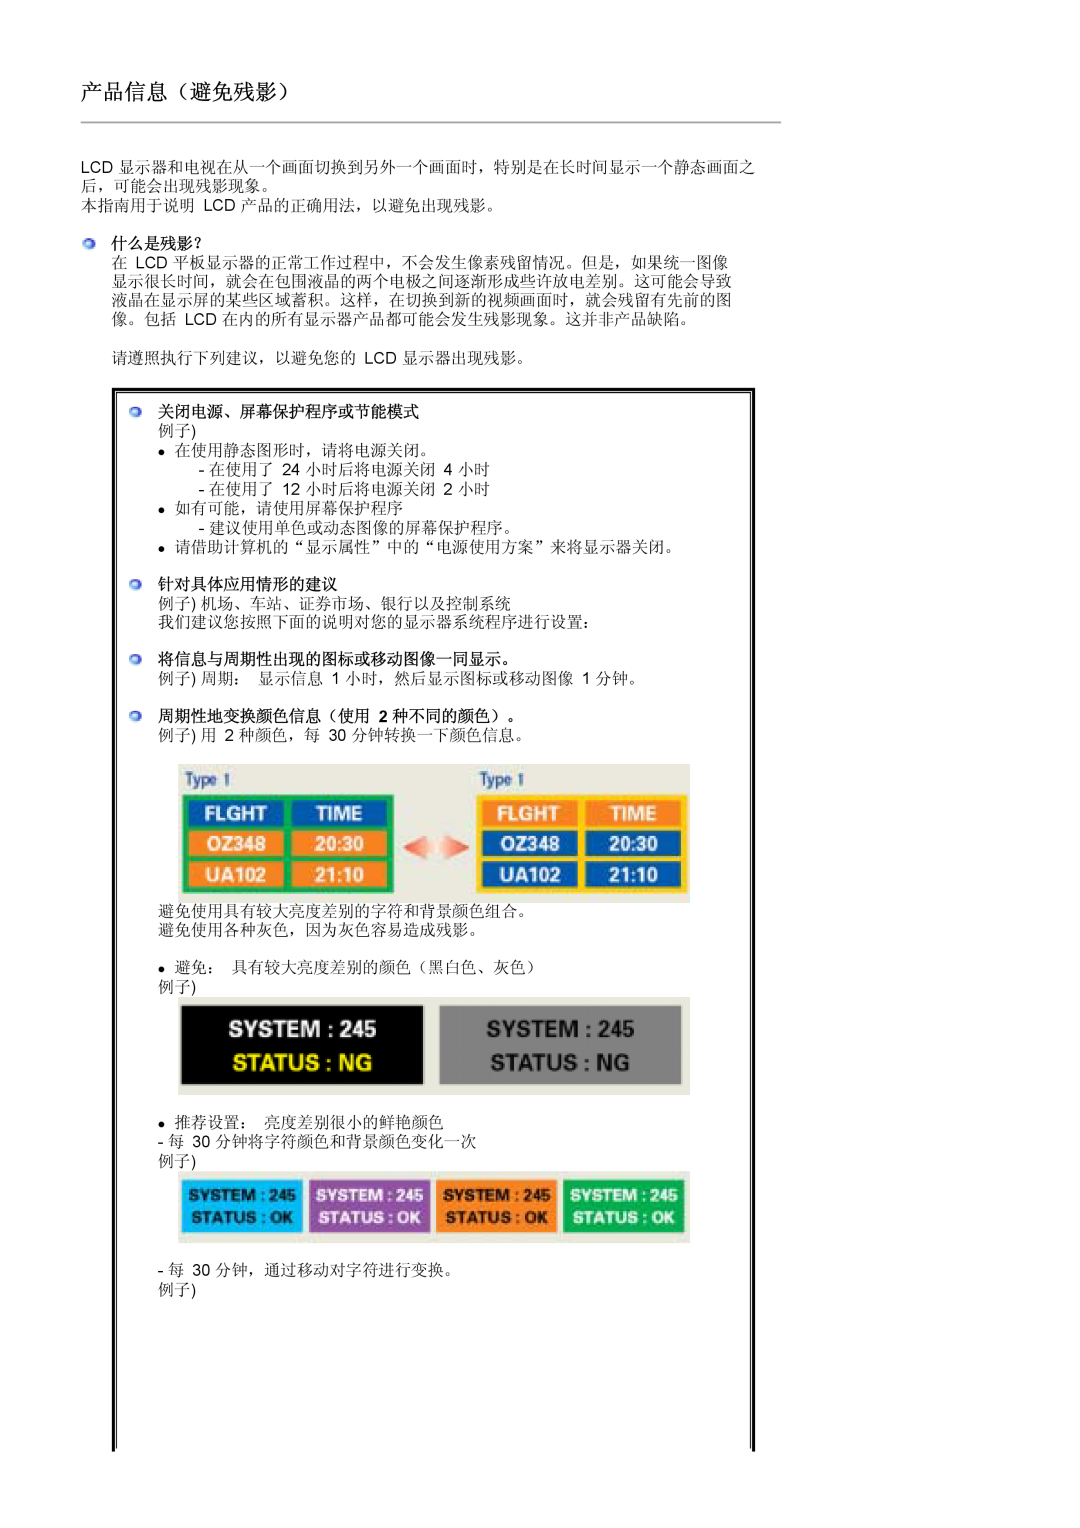 Samsung LS19MJSTSQ/EDC 什么是残影？, 关闭电源、屏幕保护程序或节能模式, 针对具体应用情形的建议, 将信息与周期性出现的图标或移动图像一同显示。, 周期性地变换颜色信息（使用 2 种不同的颜色）。, 产品信息（避免残影） 